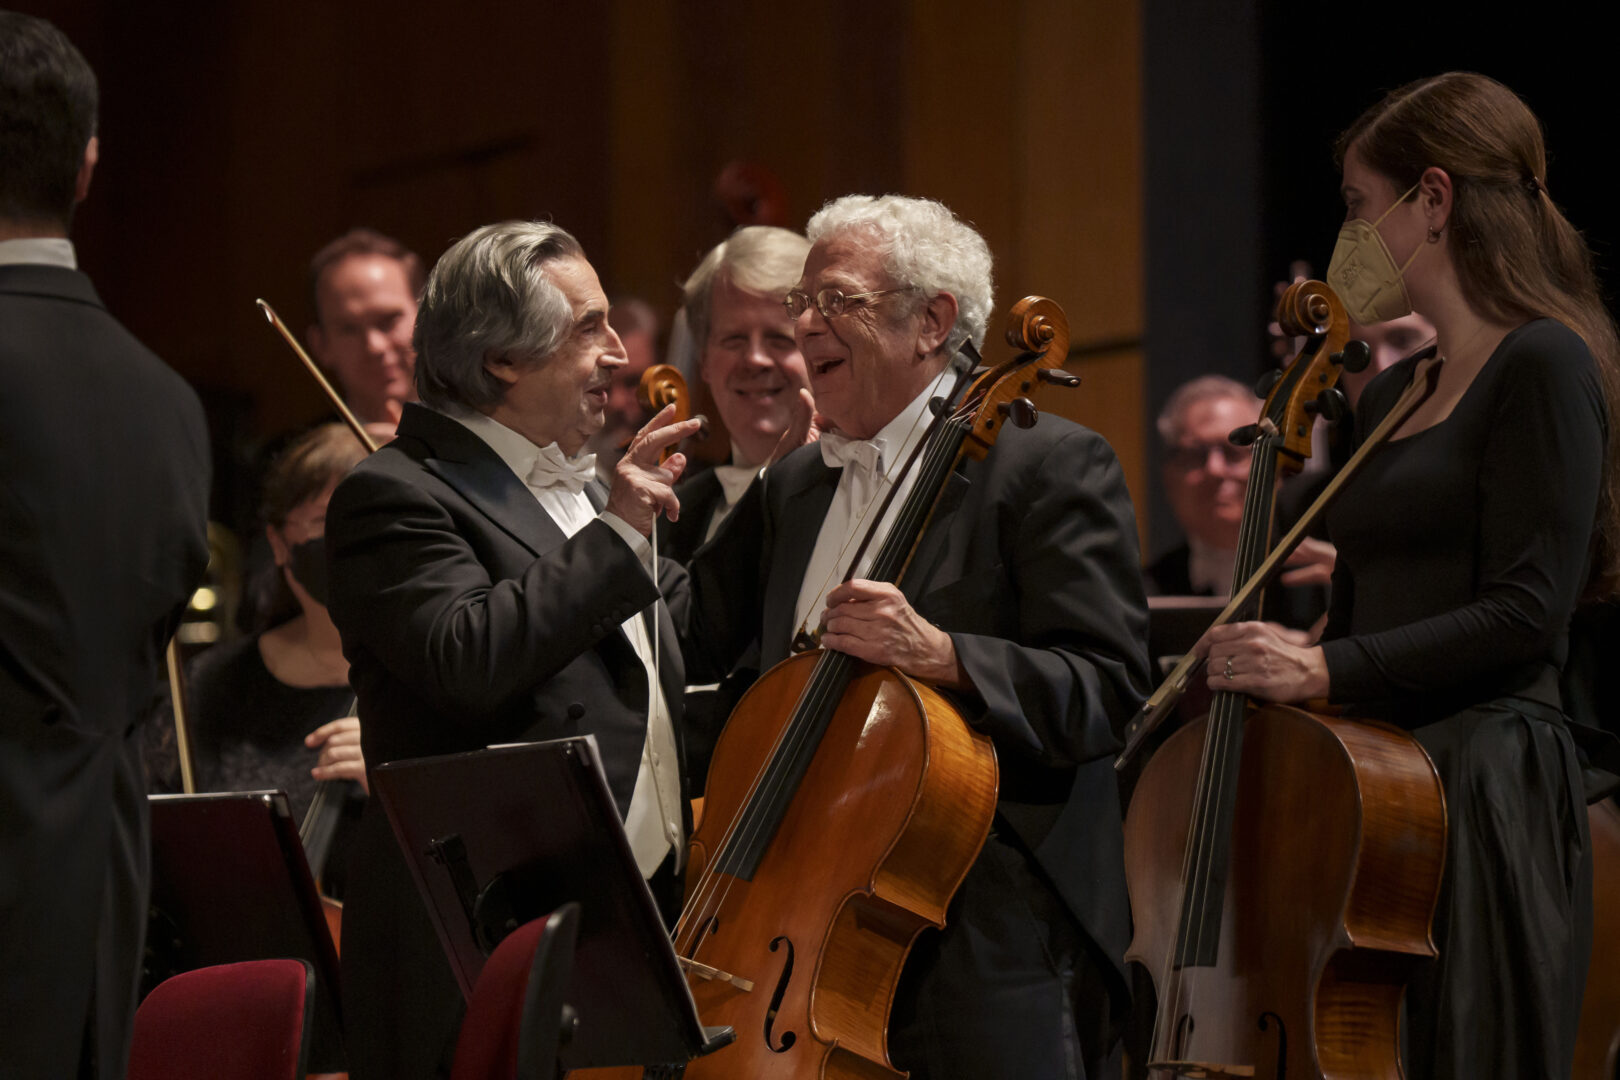 Riccardo Muti, Il Direttore e il musicista all'ultimo concerto.
Chicago Symphony Orchestra
2024 European Tour
Concert and Post in Rome
© Todd Rosenberg Photography 2024